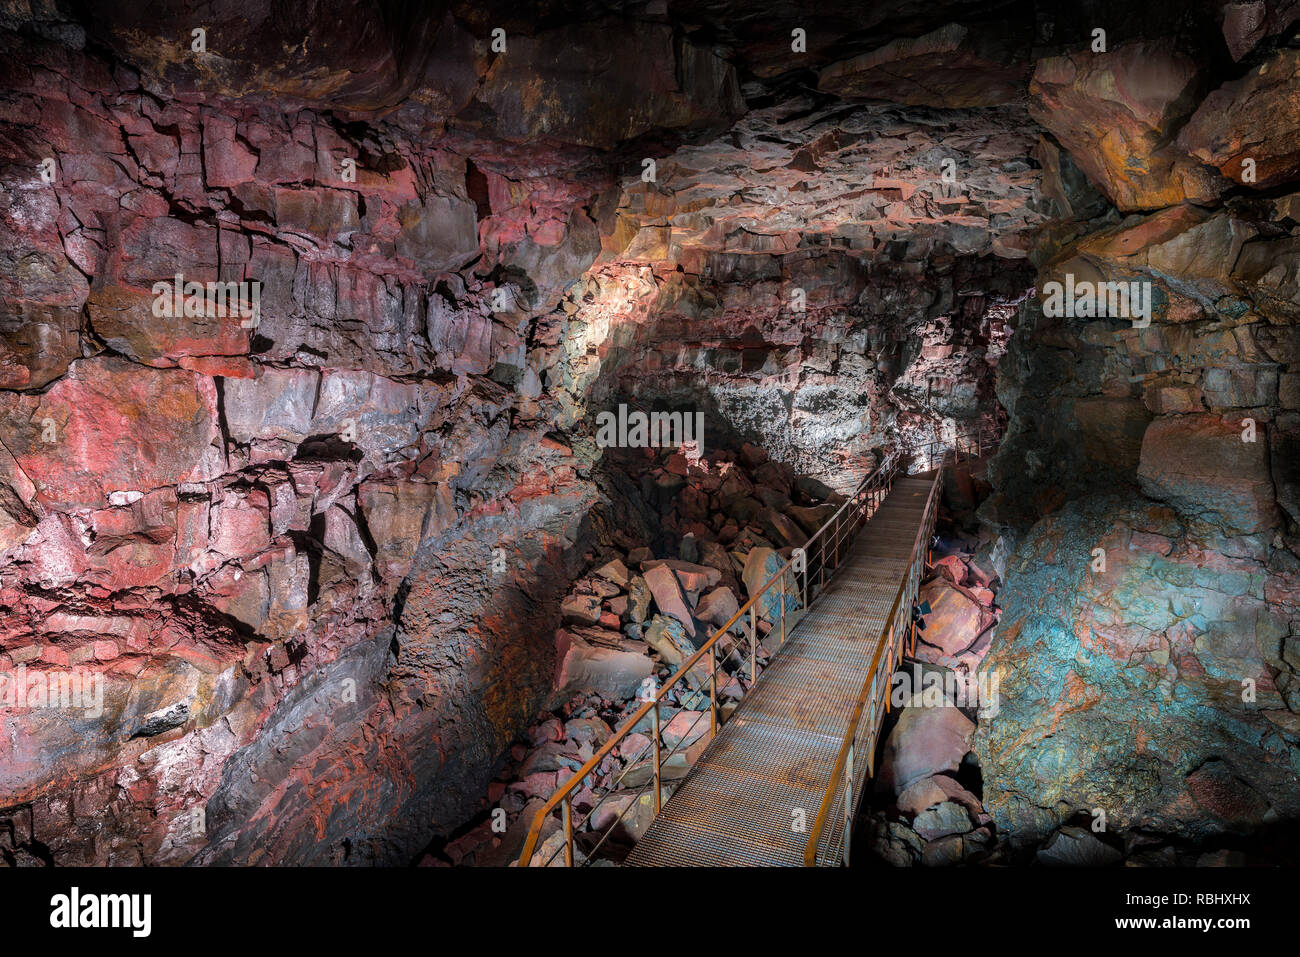 Raufarholshellir grotte de lave, de l'Islande Banque D'Images